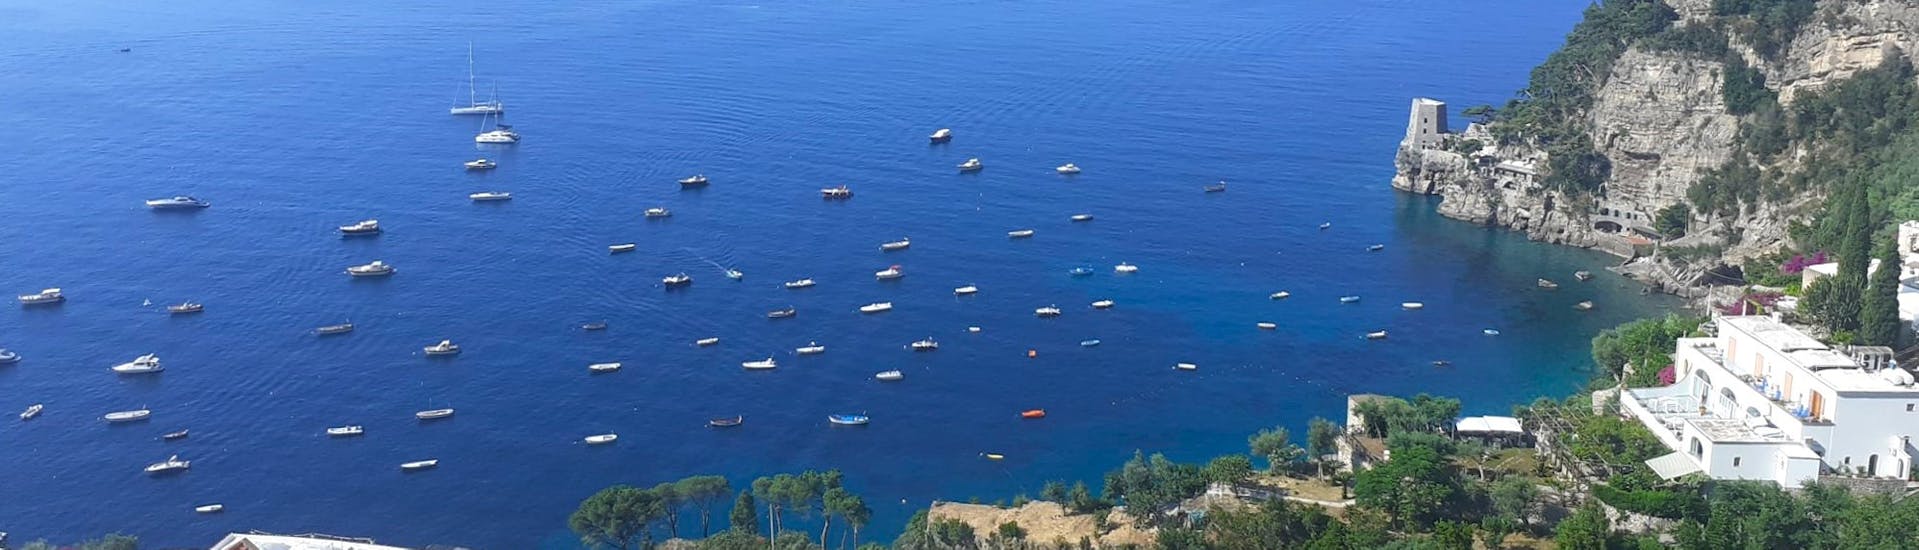 Vue de la côte amalfitaine depuis le ciel pendant la Location de bateau semi-rigide depuis Positano (jusqu'à 4 pers.).